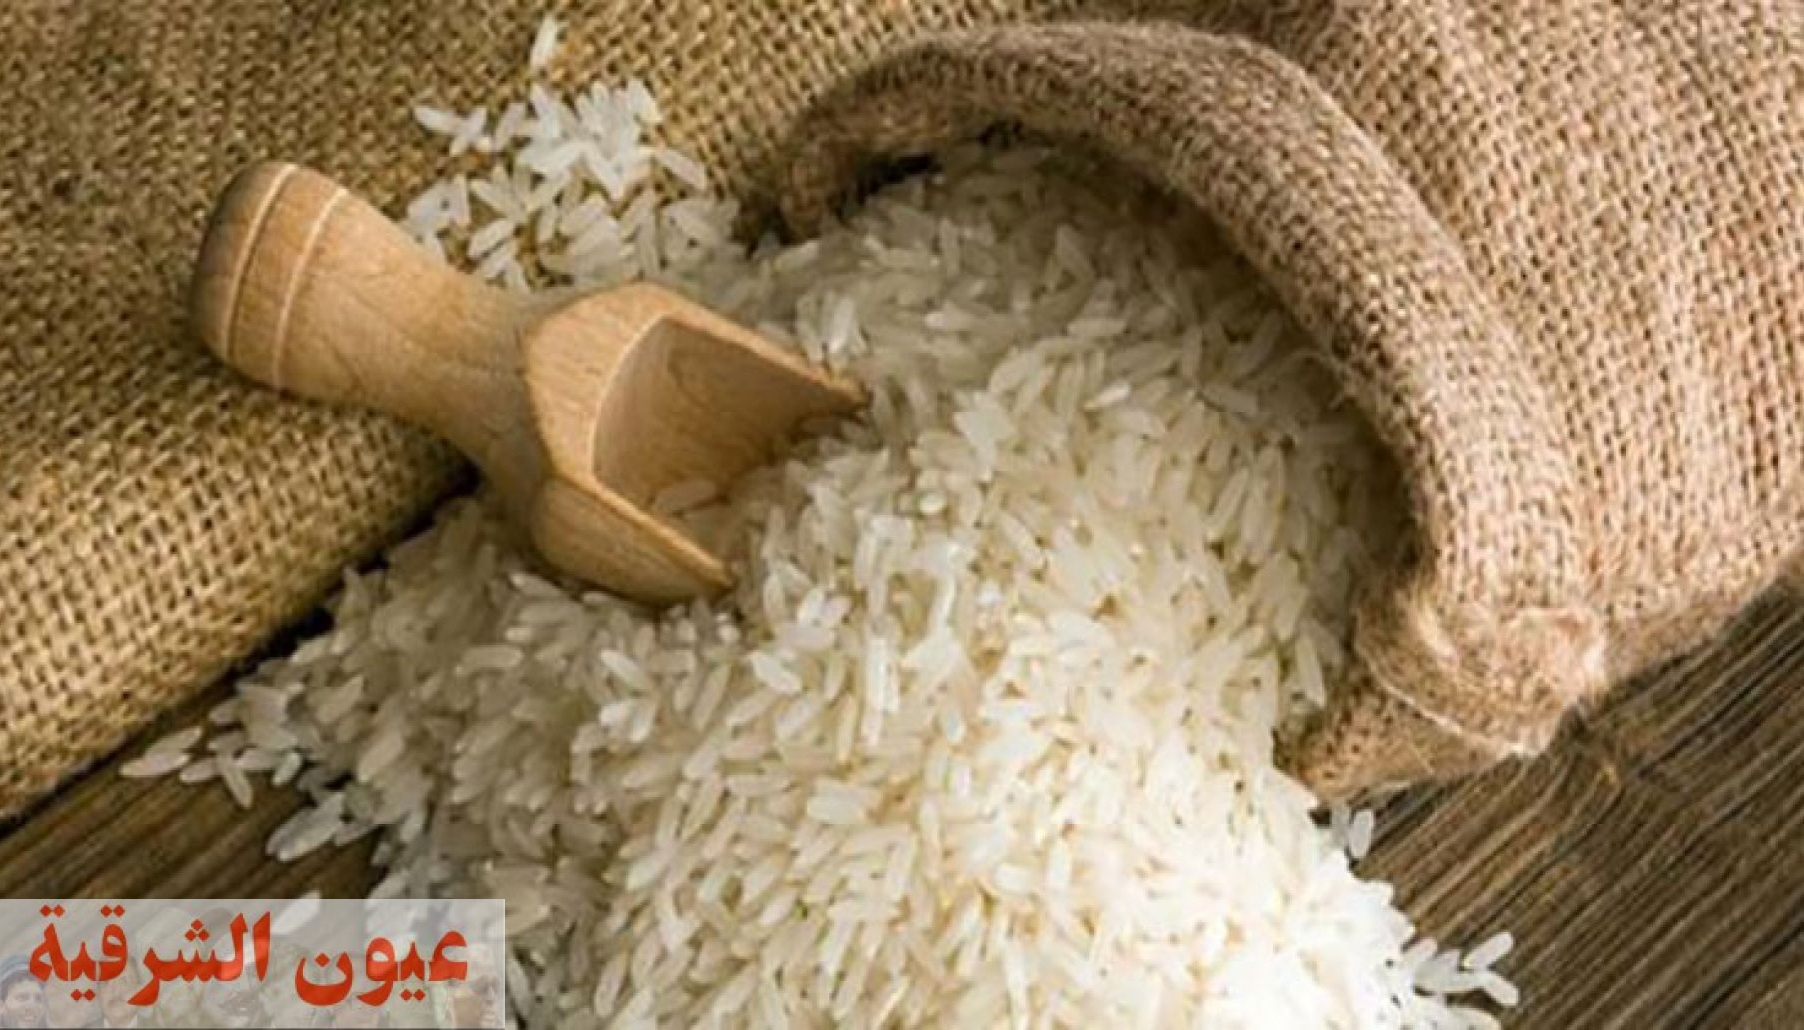 ضبط 3 طن و 200 كيلو جرام أرز أبيض وملح طعام مجهول المصدر بالشرقية